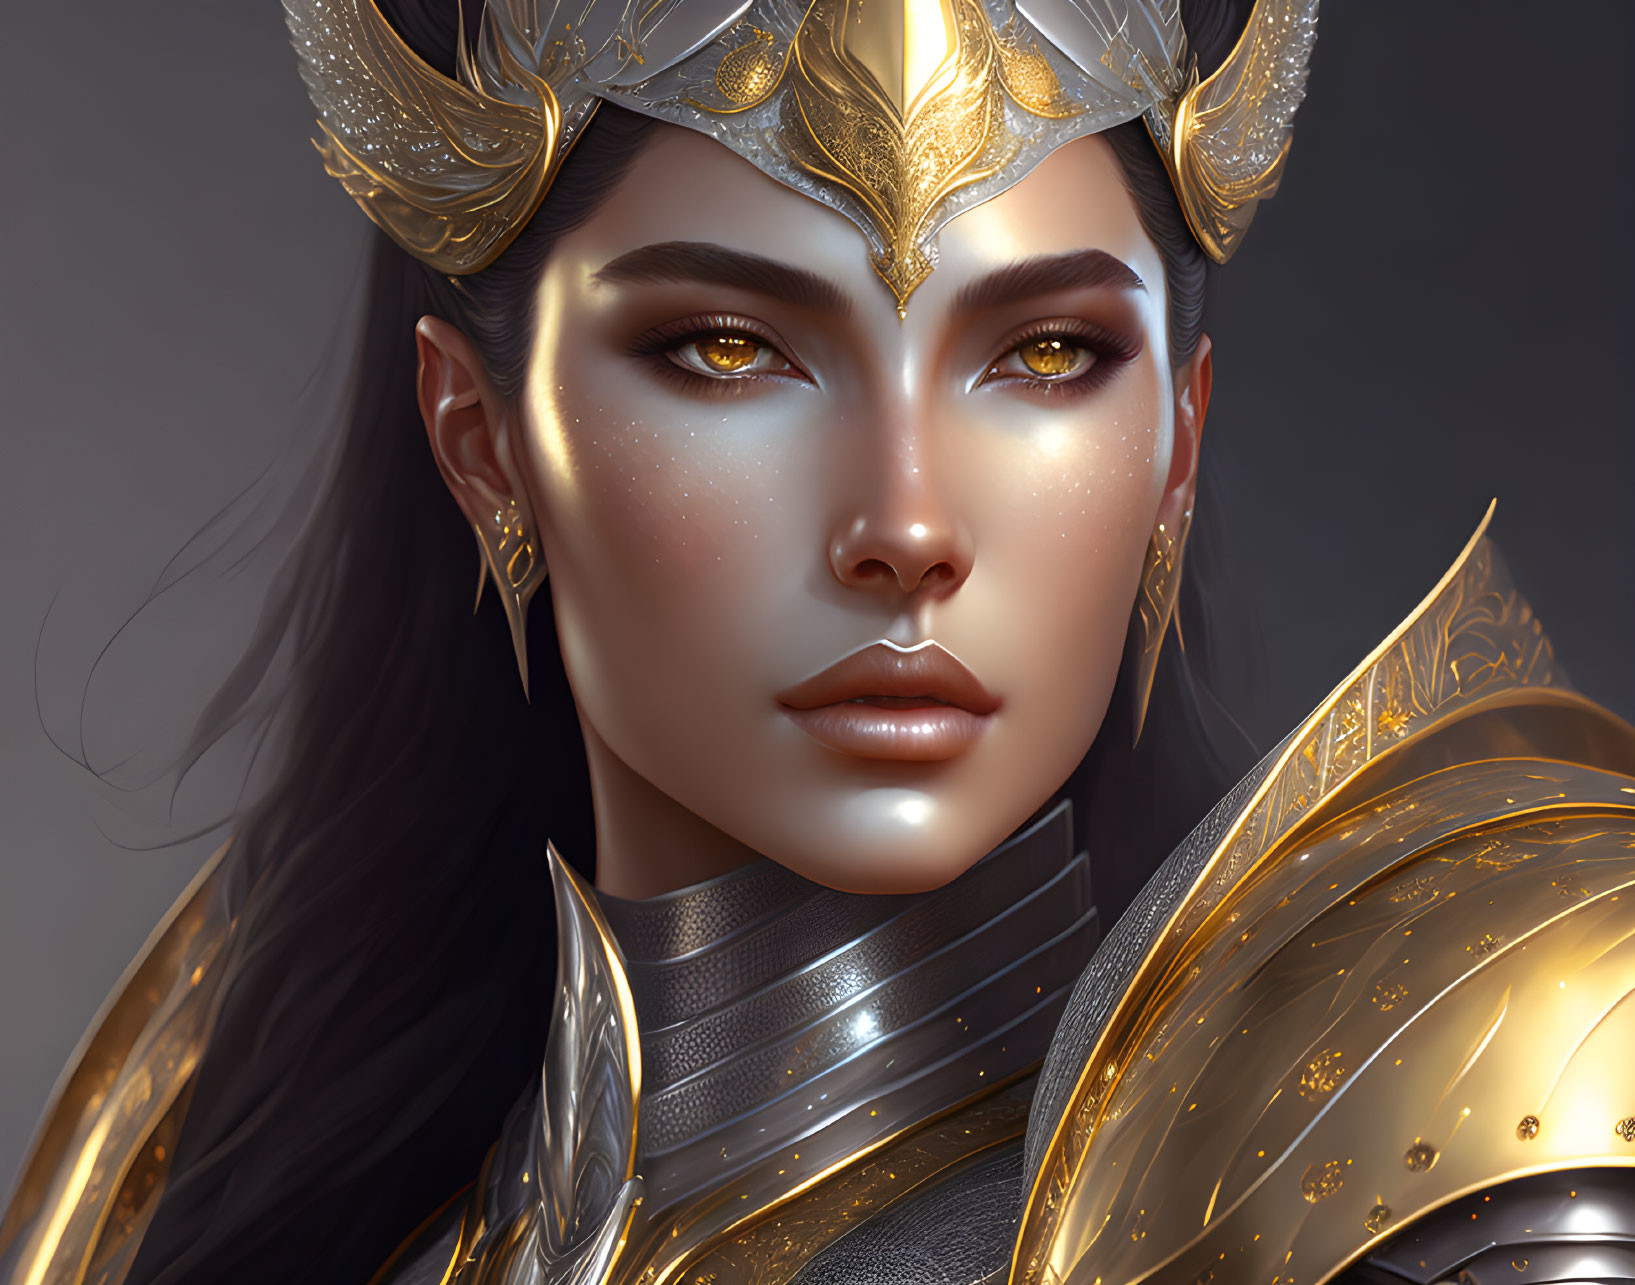 Illustrated female warrior in ornate golden armor and headdress